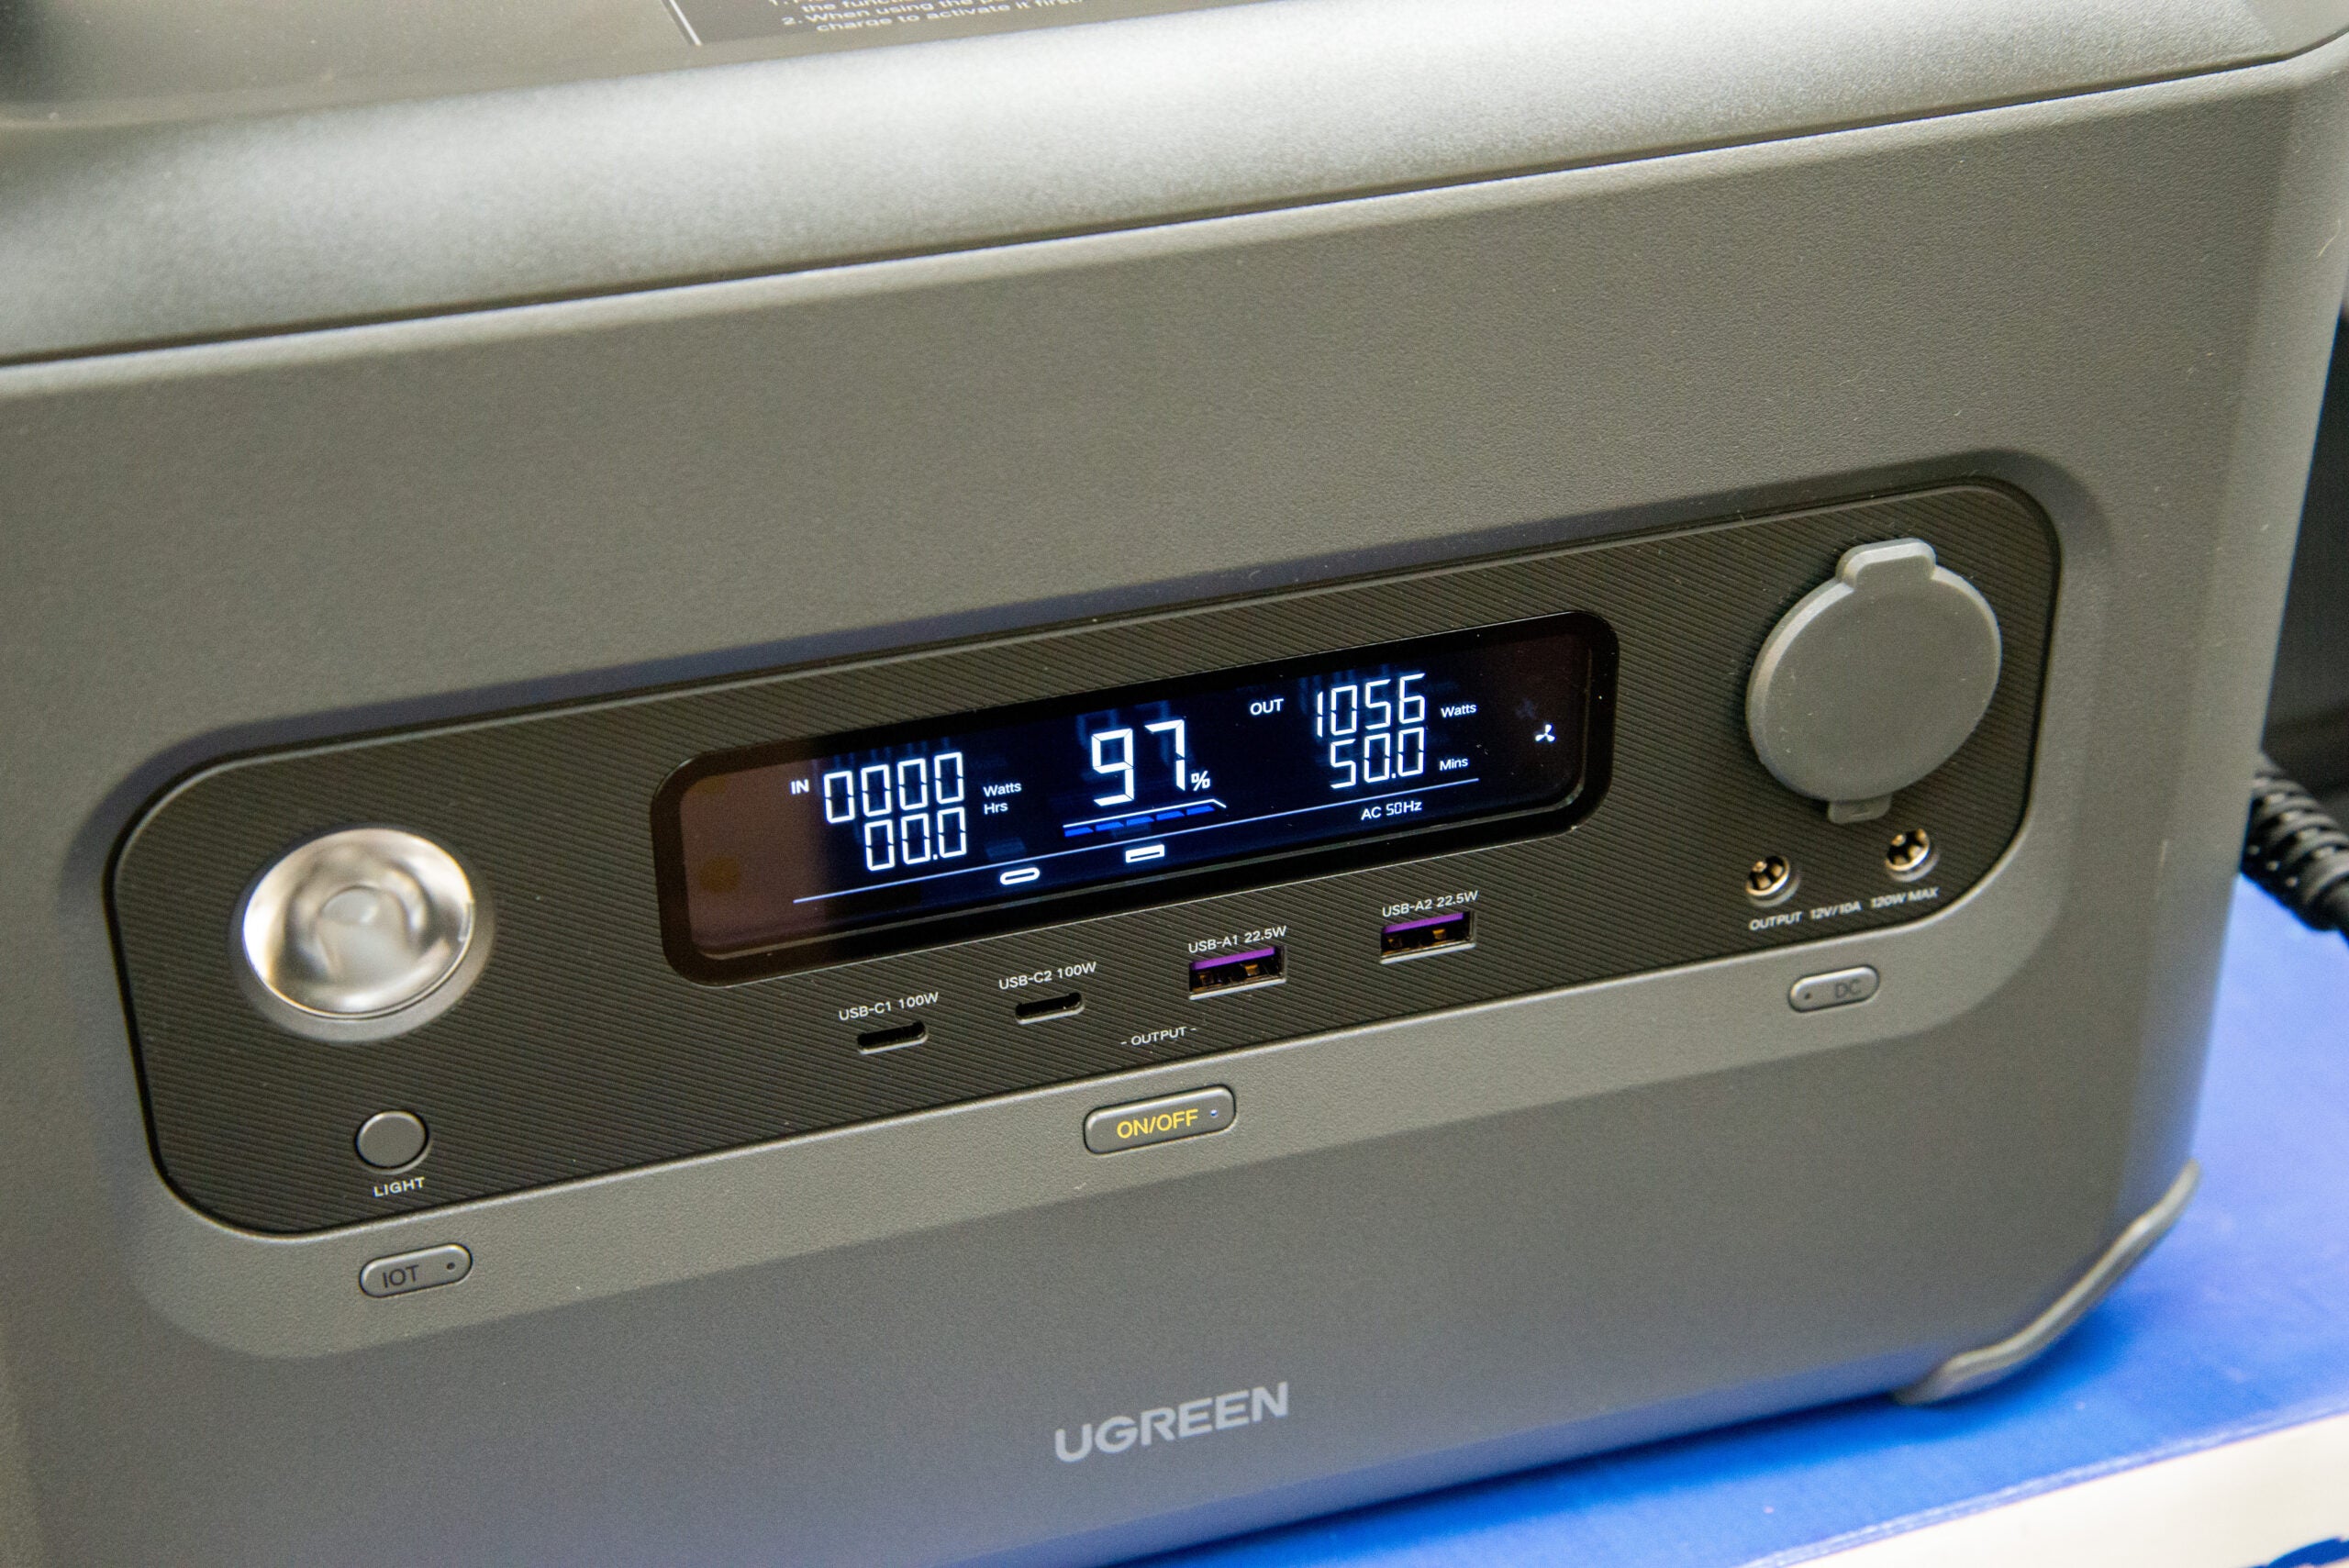 Écran UGreen PowerRoam GS1200 affichant la sortie actuelle